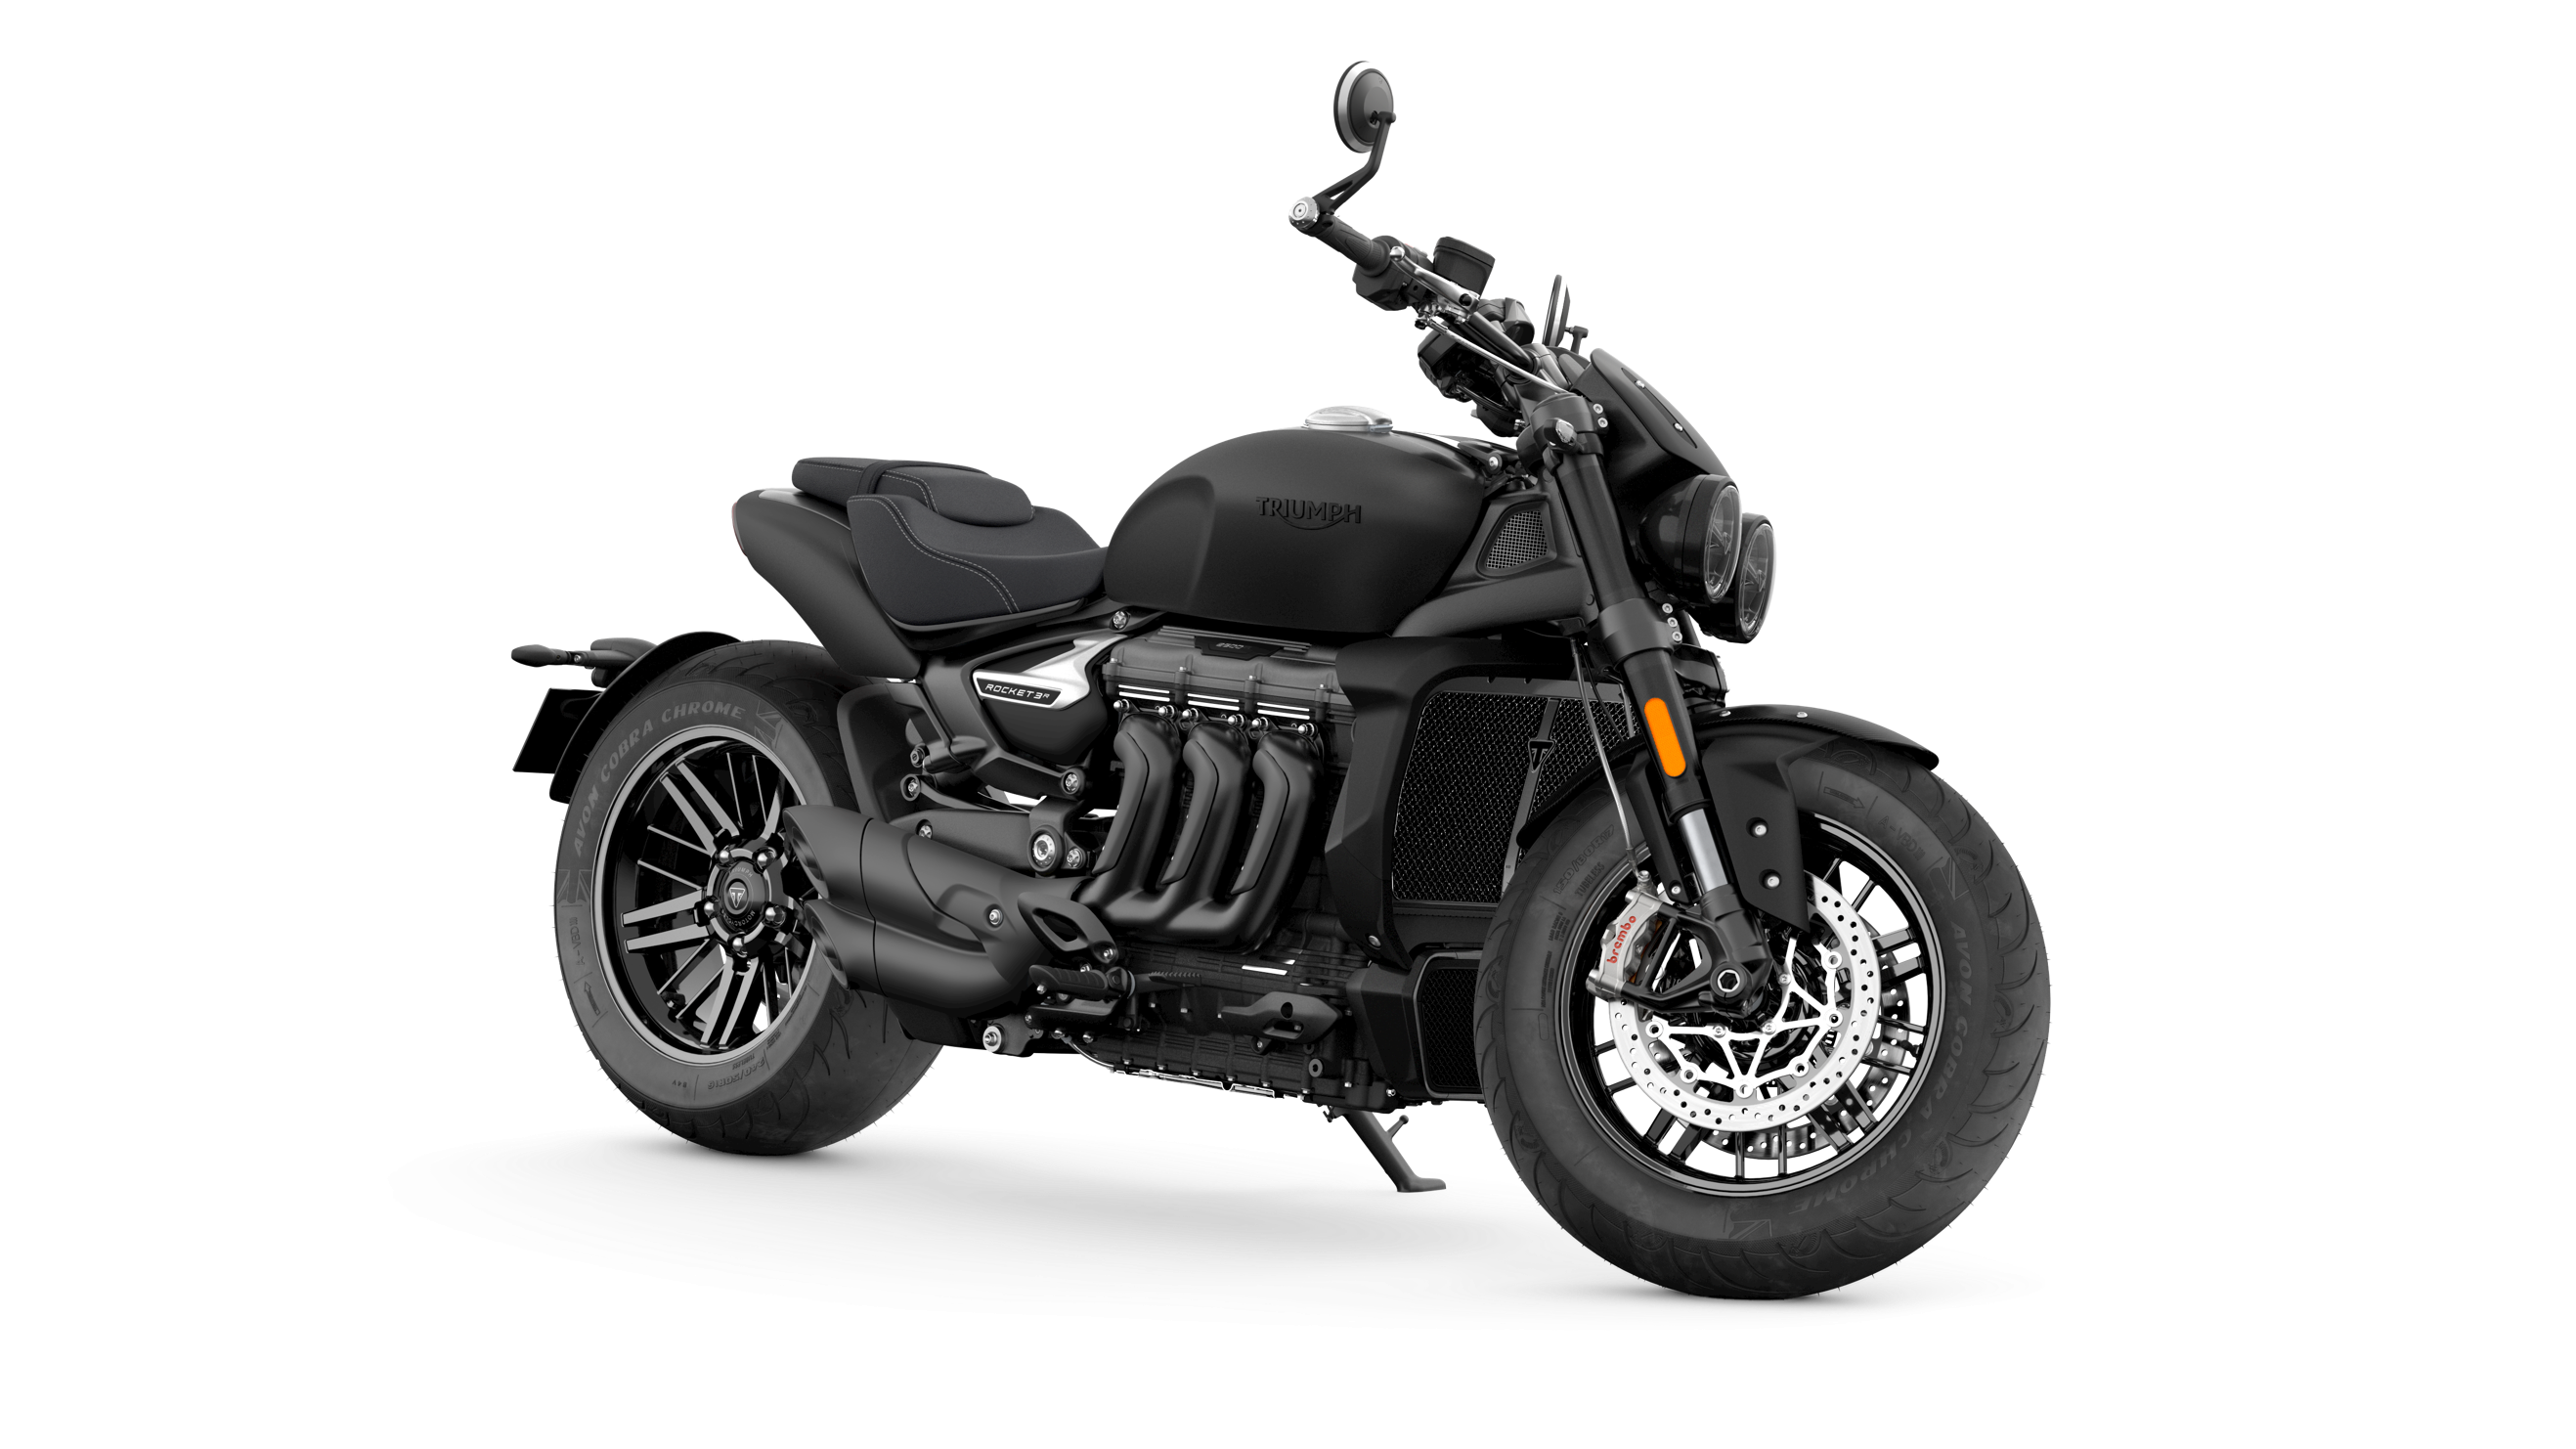 Et billede, der indeholder motorcykel, vej, udendrs, motorcykling

Automatisk genereret beskrivelse